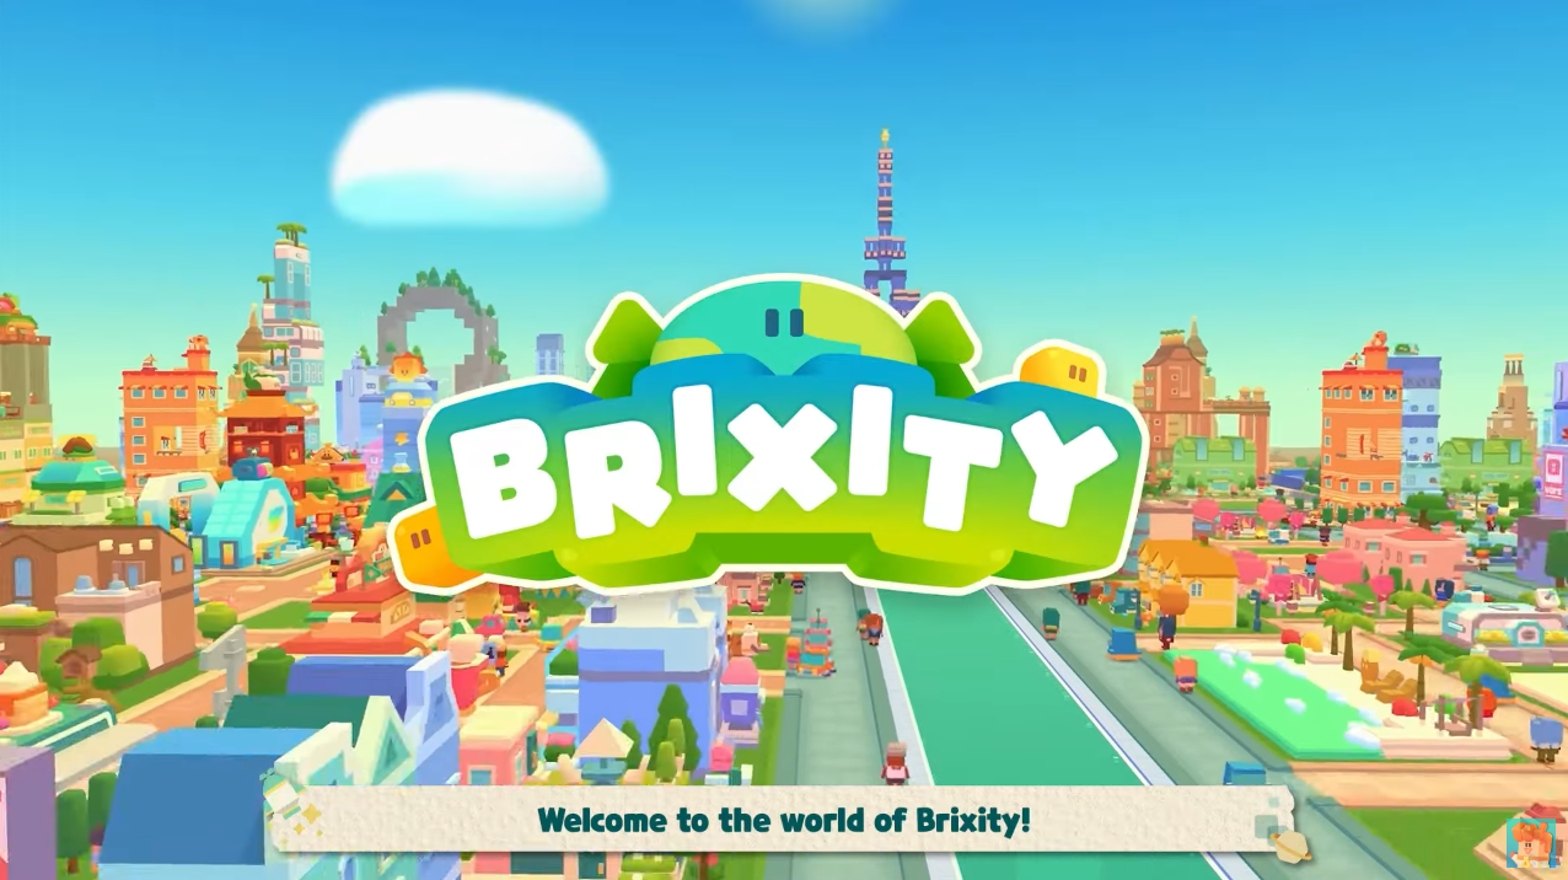 BRIXITY-Voranmeldungen laufen heiß, während Devsisters Games' neuer Städtebau-Simulator die Community begeistert